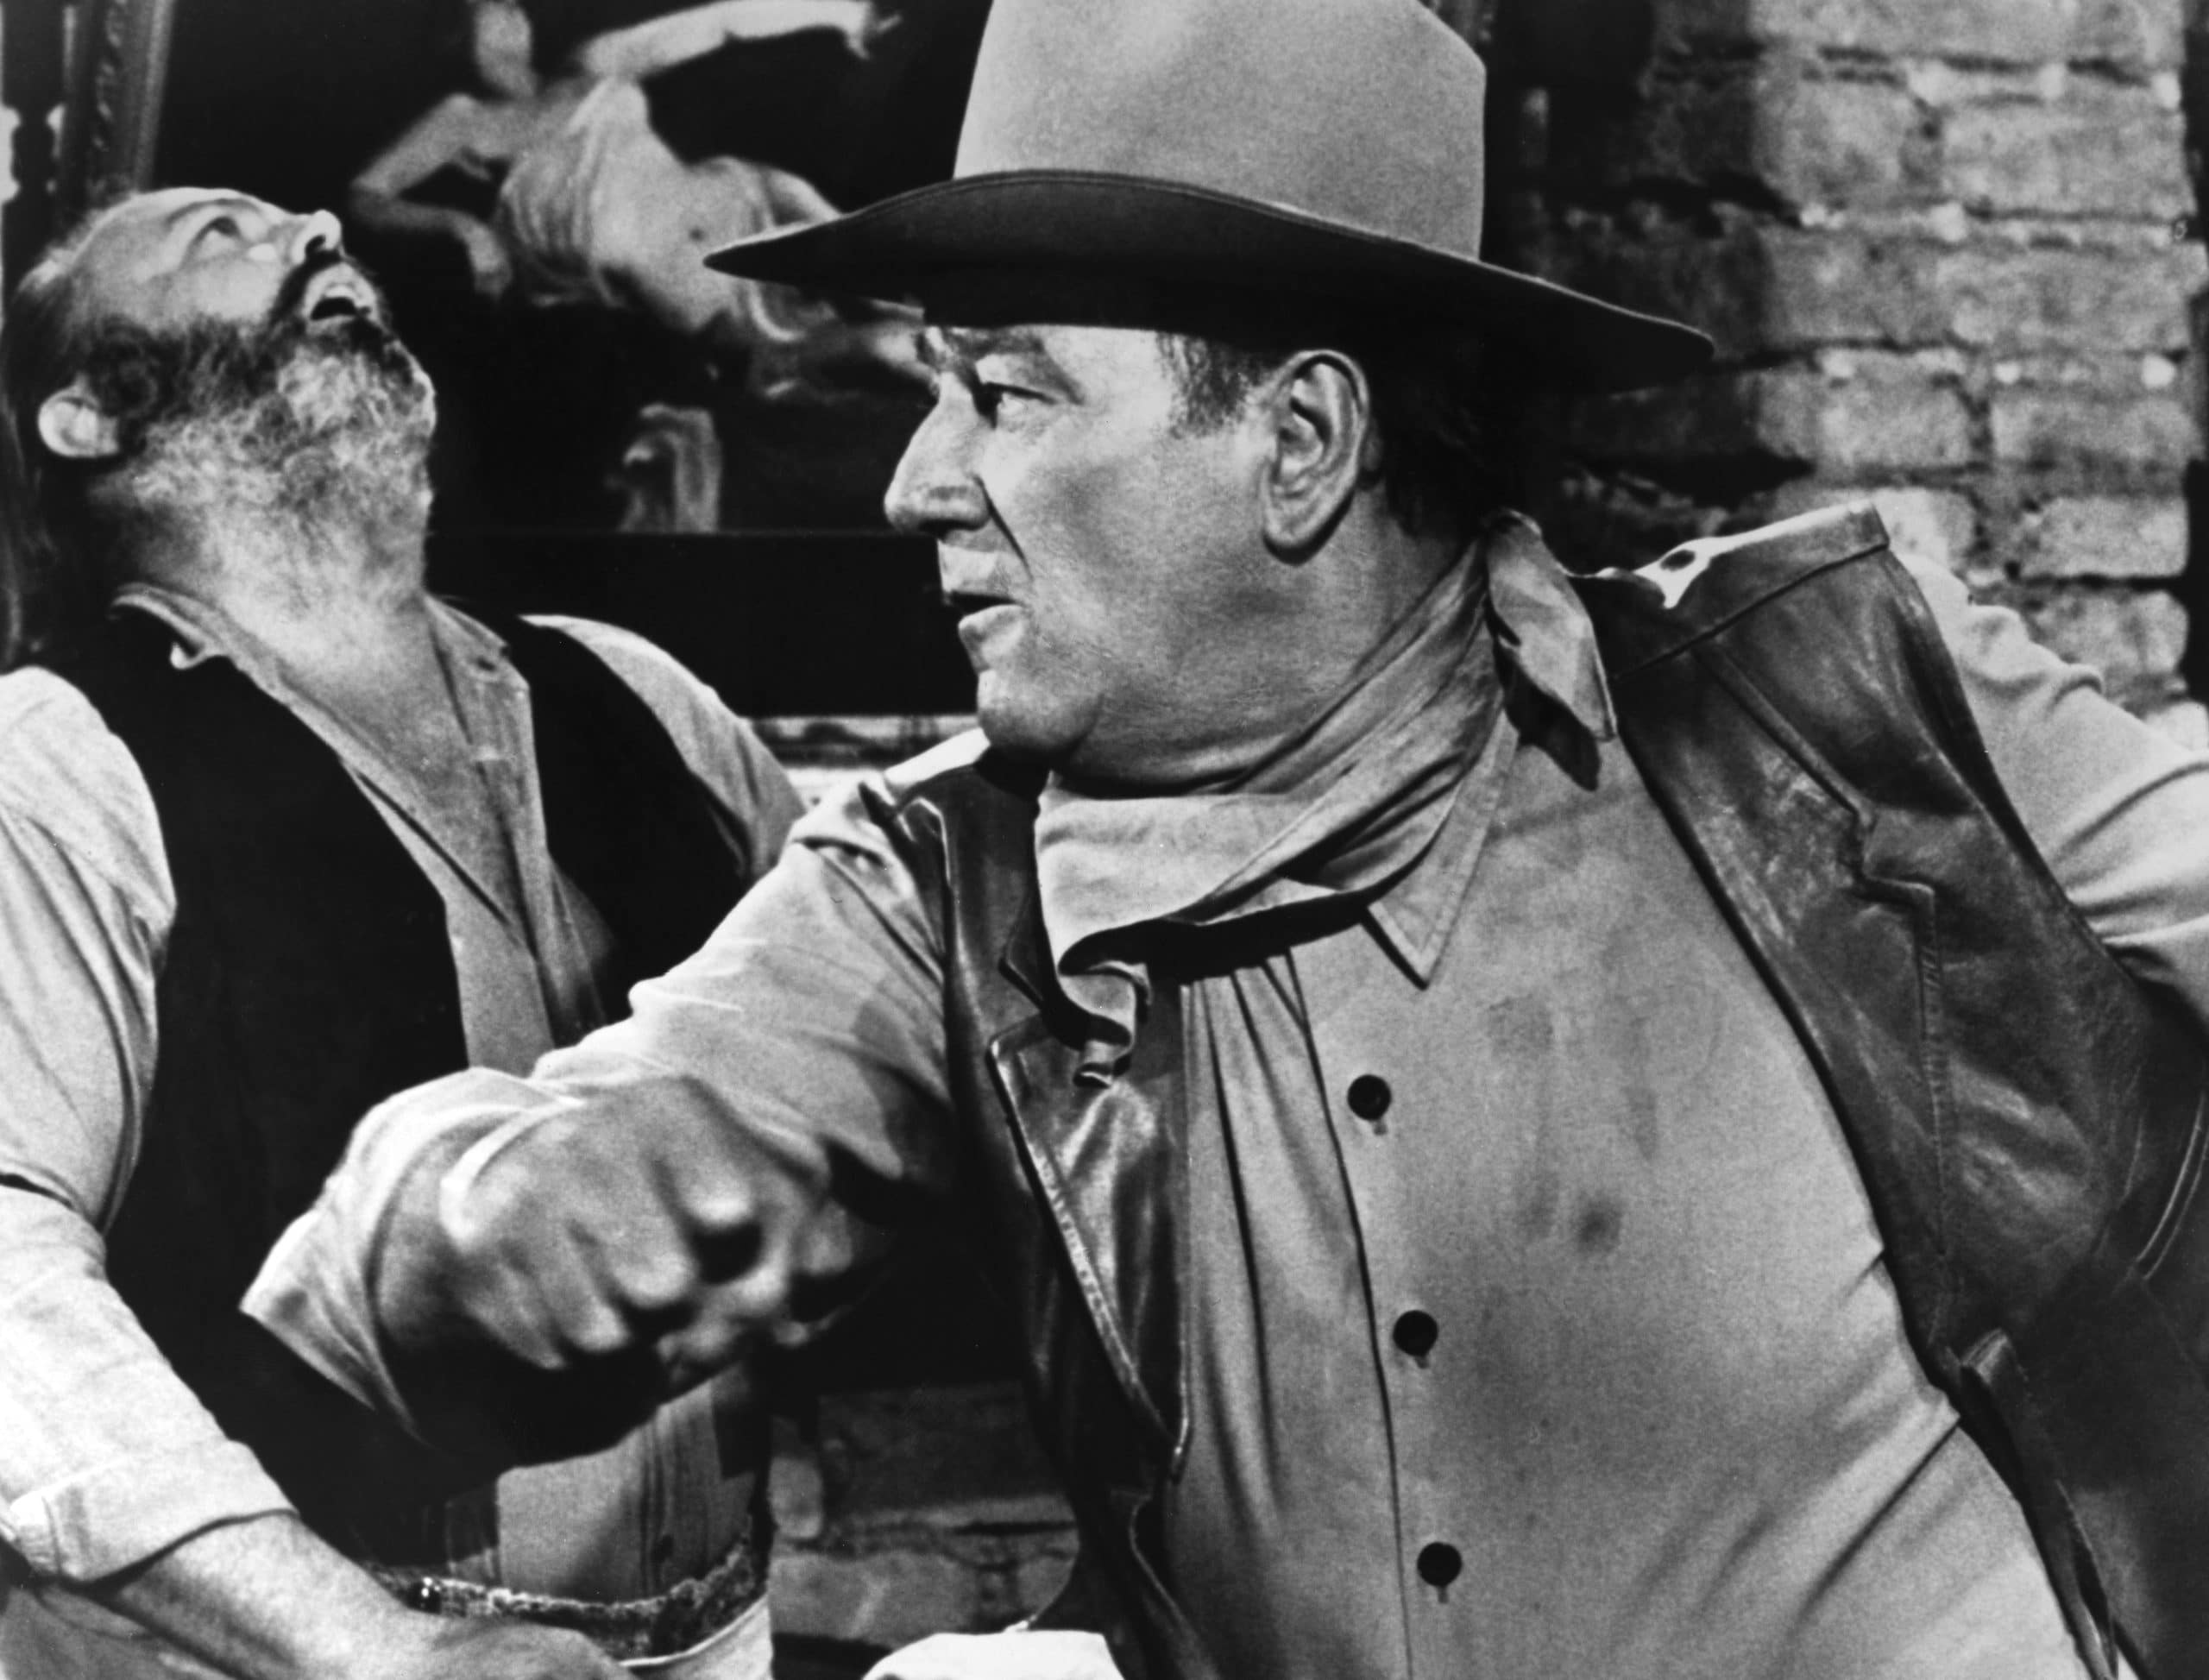 THE WAR WAGON, John Wayne (right), 1967